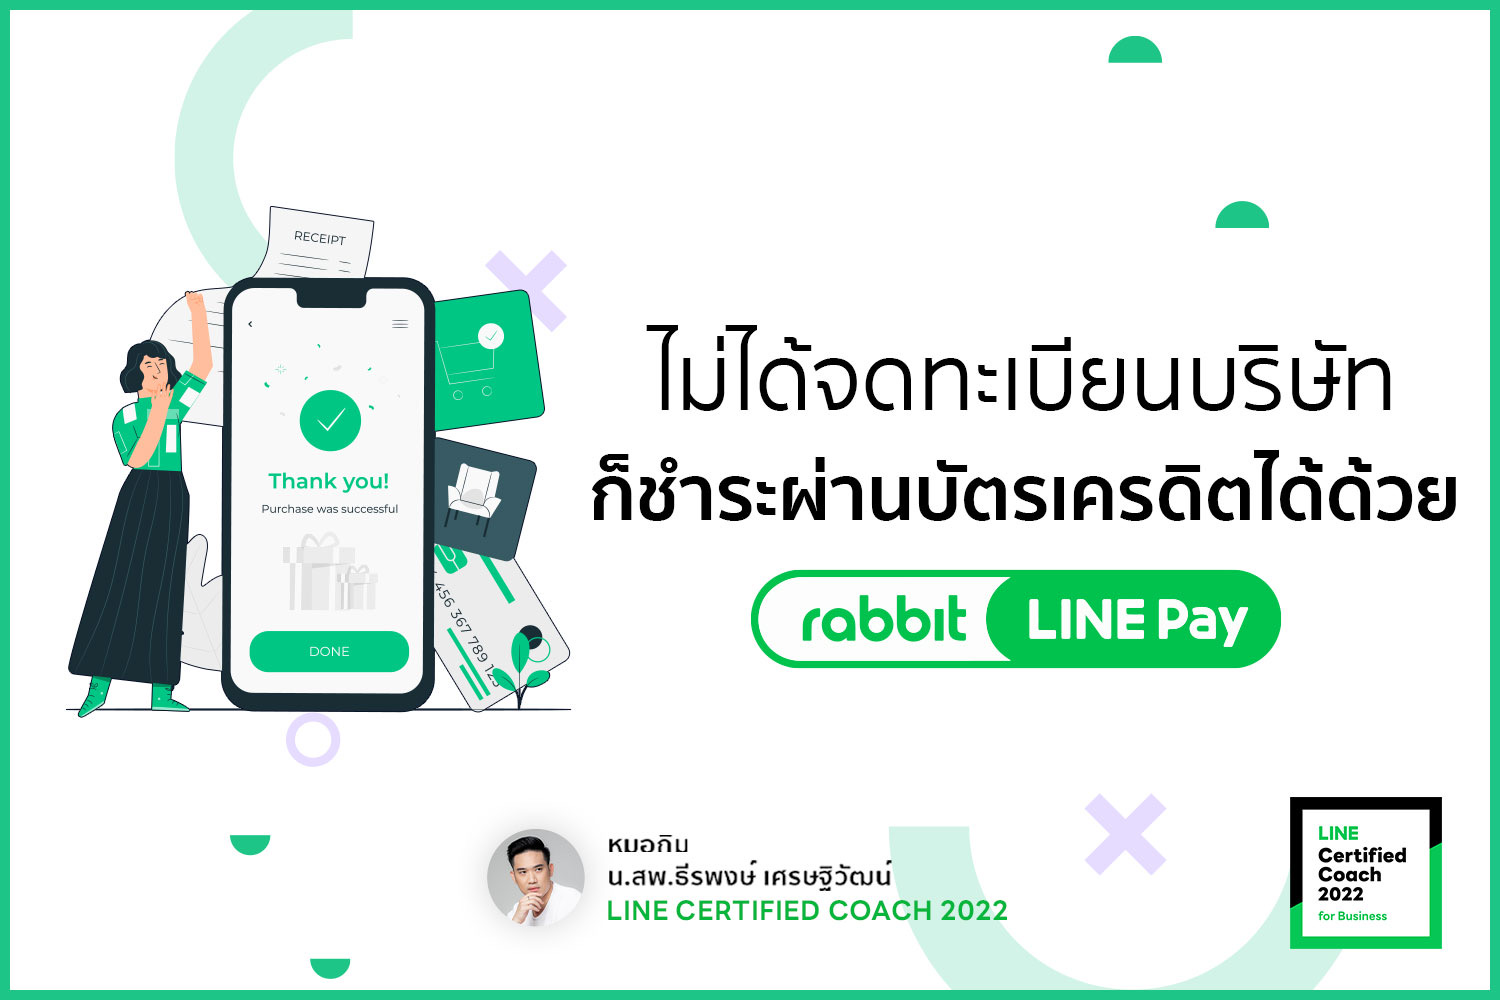 ไม่ได้จดทะเบียนบริษัทก็ชำระผ่านบัตรเคดิตได้ด้วย Rabbit LINE Pay